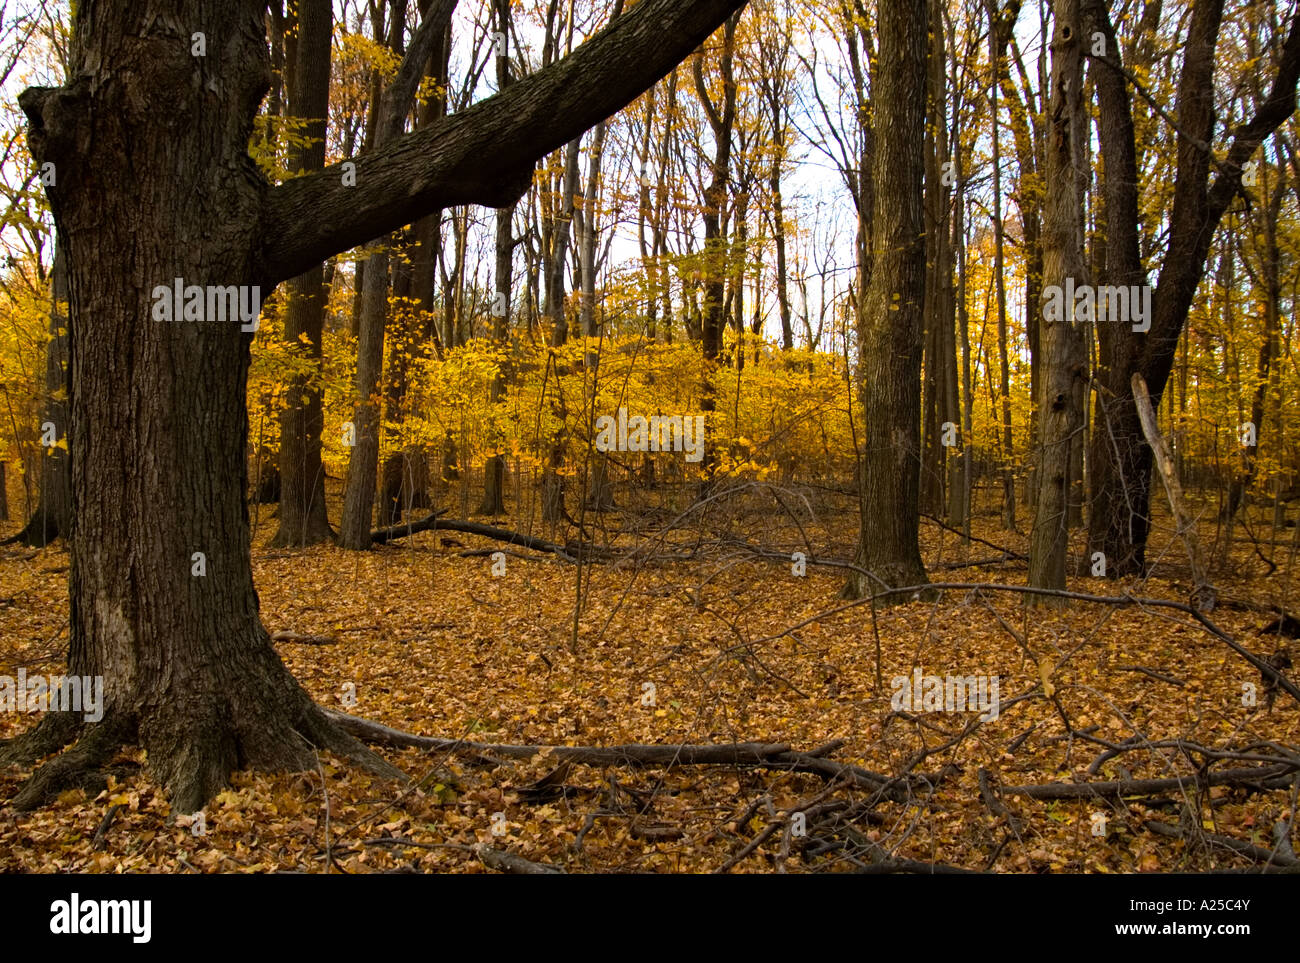 Les feuilles jaune brillant encore accrochée sur les petits arbres forment un ensemble de leurs propre sur ce couvert journée de novembre Banque D'Images